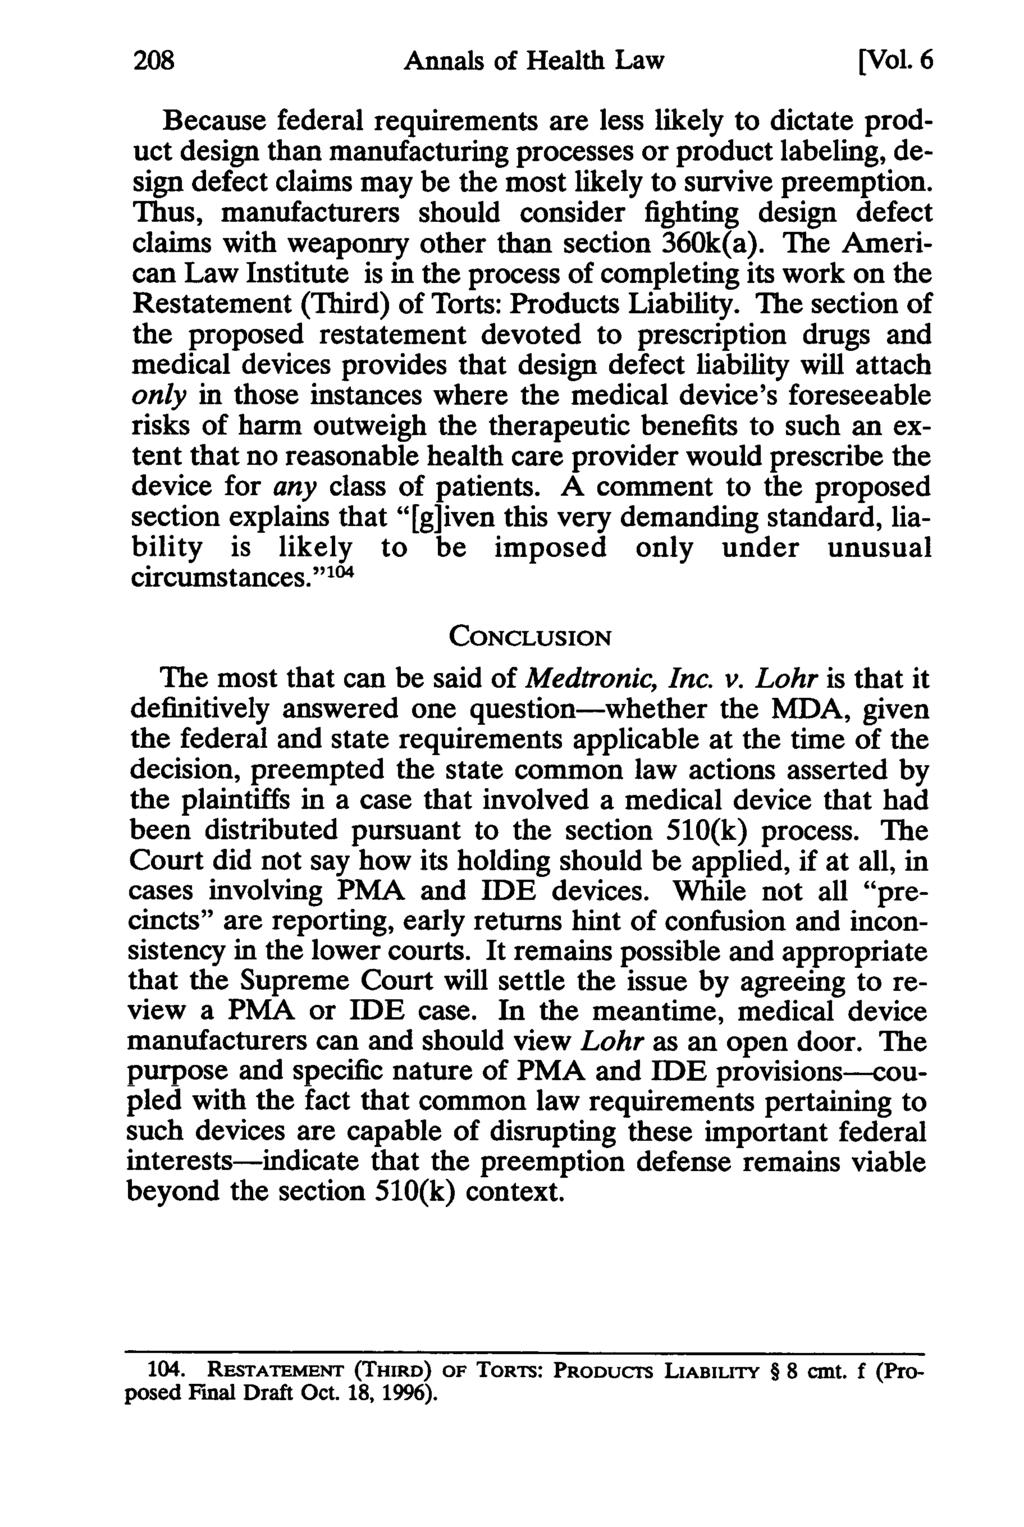 208 Annals of Health Law Annals of Health Law, Vol. 6 [1997], Iss. 1, Art. 10 [Vol.